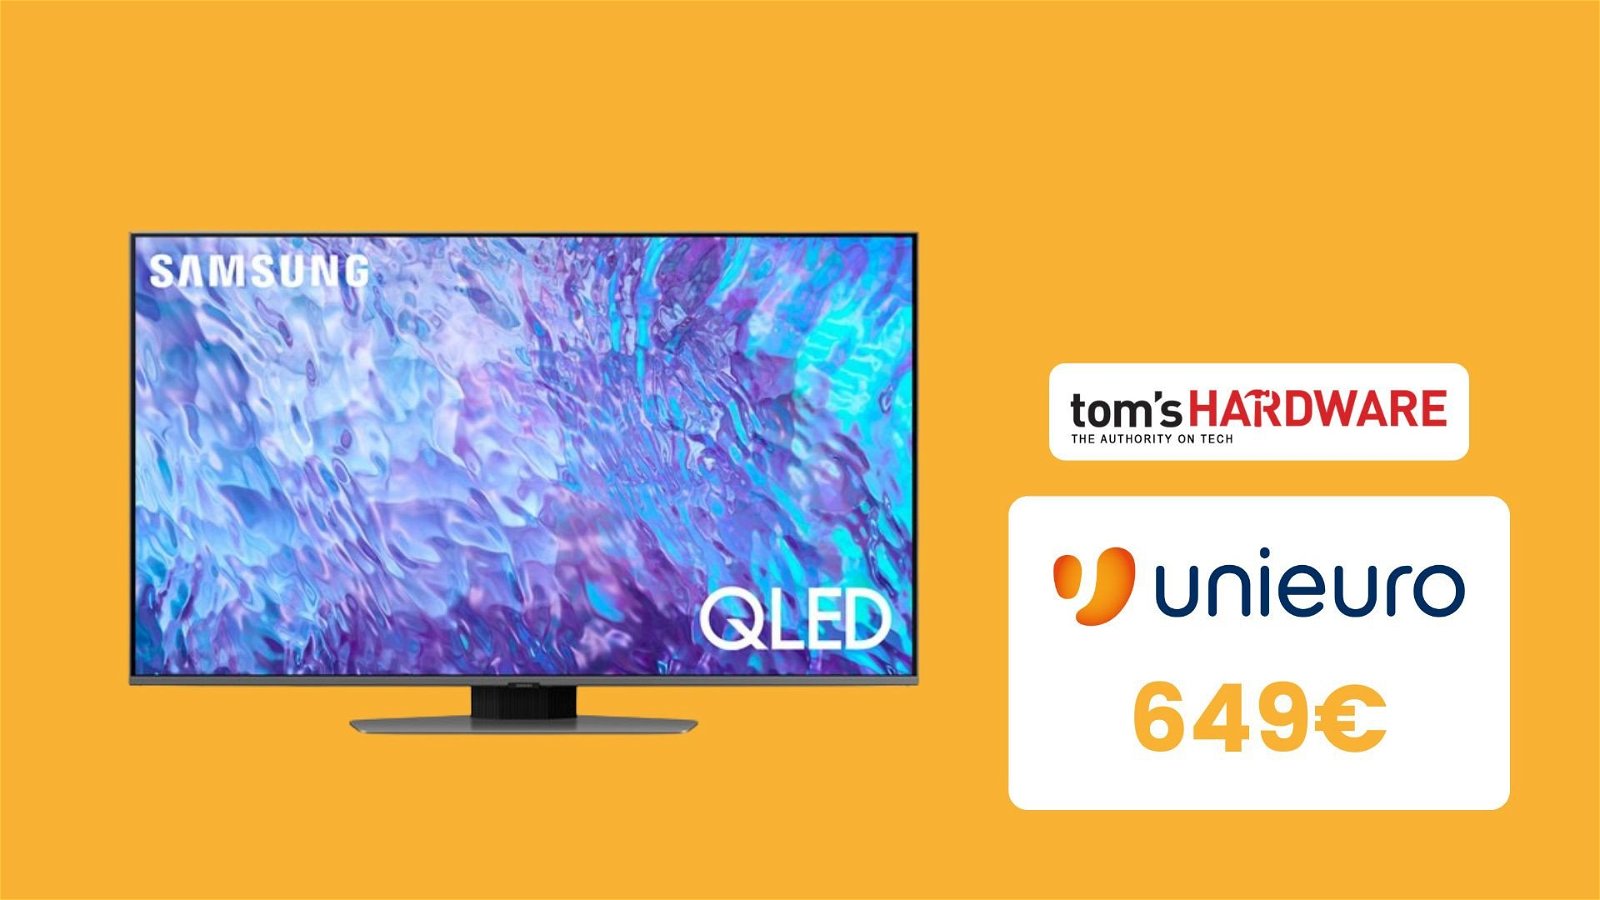 Immagine di TV Samsung QLED a meno di 650€: l'offerta di Unieuro che va oltre l'entry level